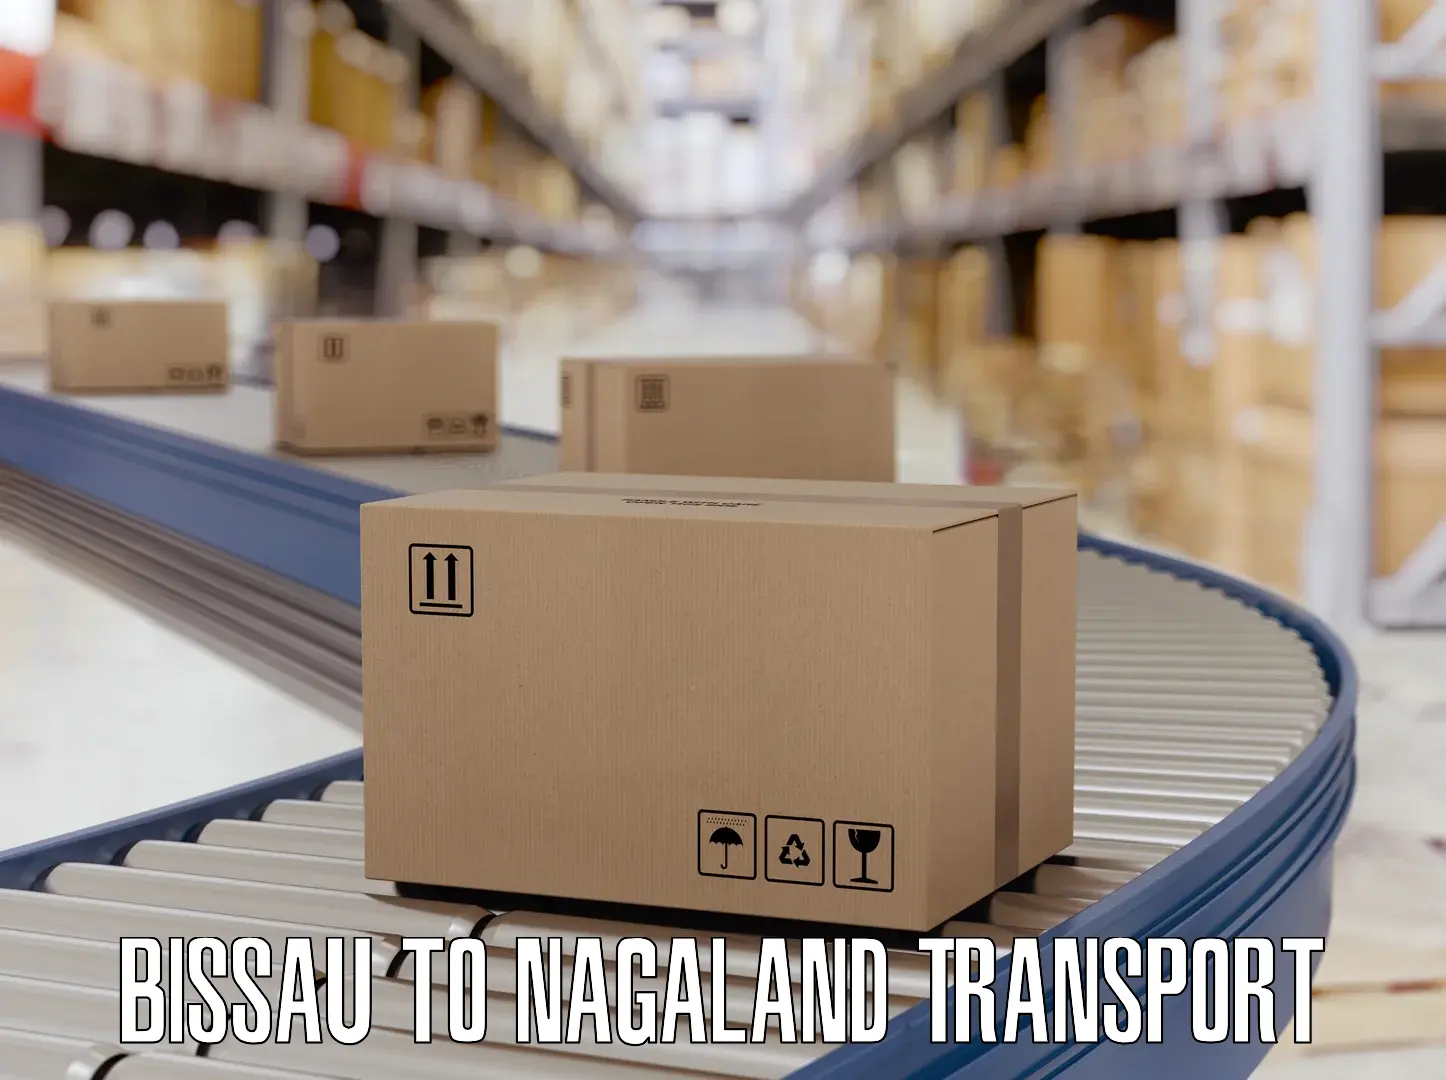 Transport shared services Bissau to Nagaland